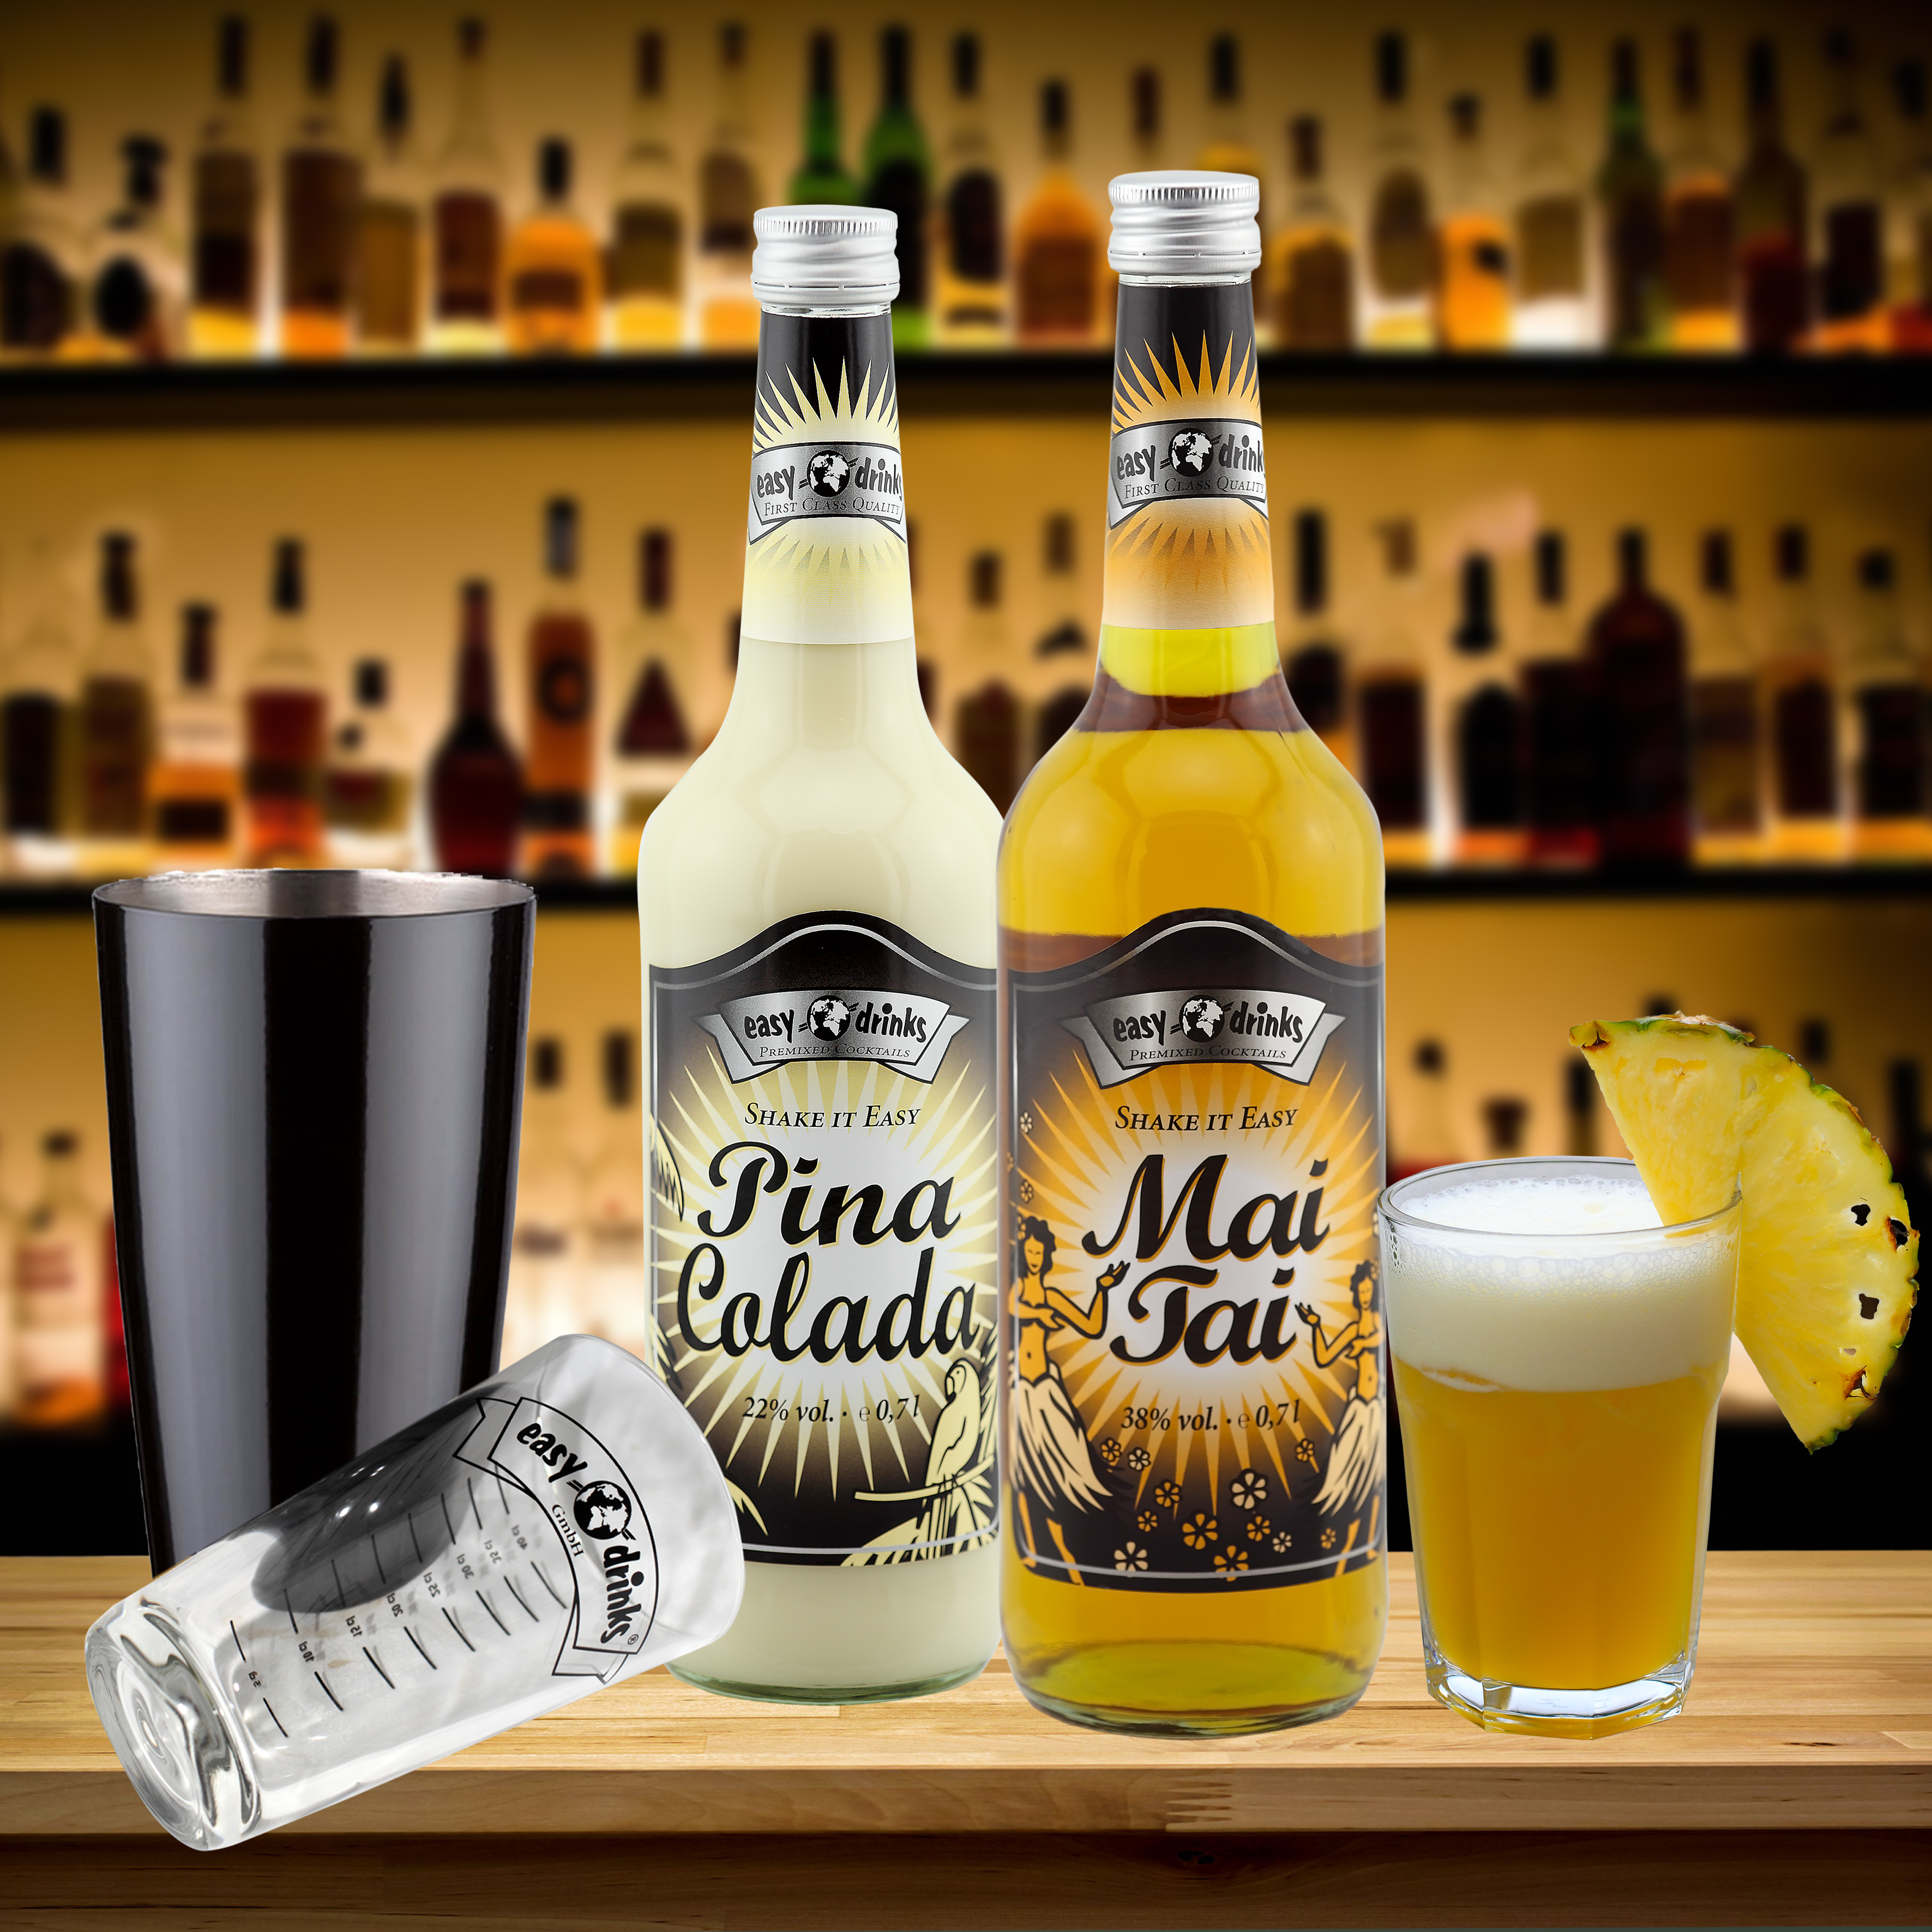 "1 Shaker, 6 Gläser, 1 Pina Colada & 1 Mai Tai" im easy drinks Fertigcocktail Set No.13